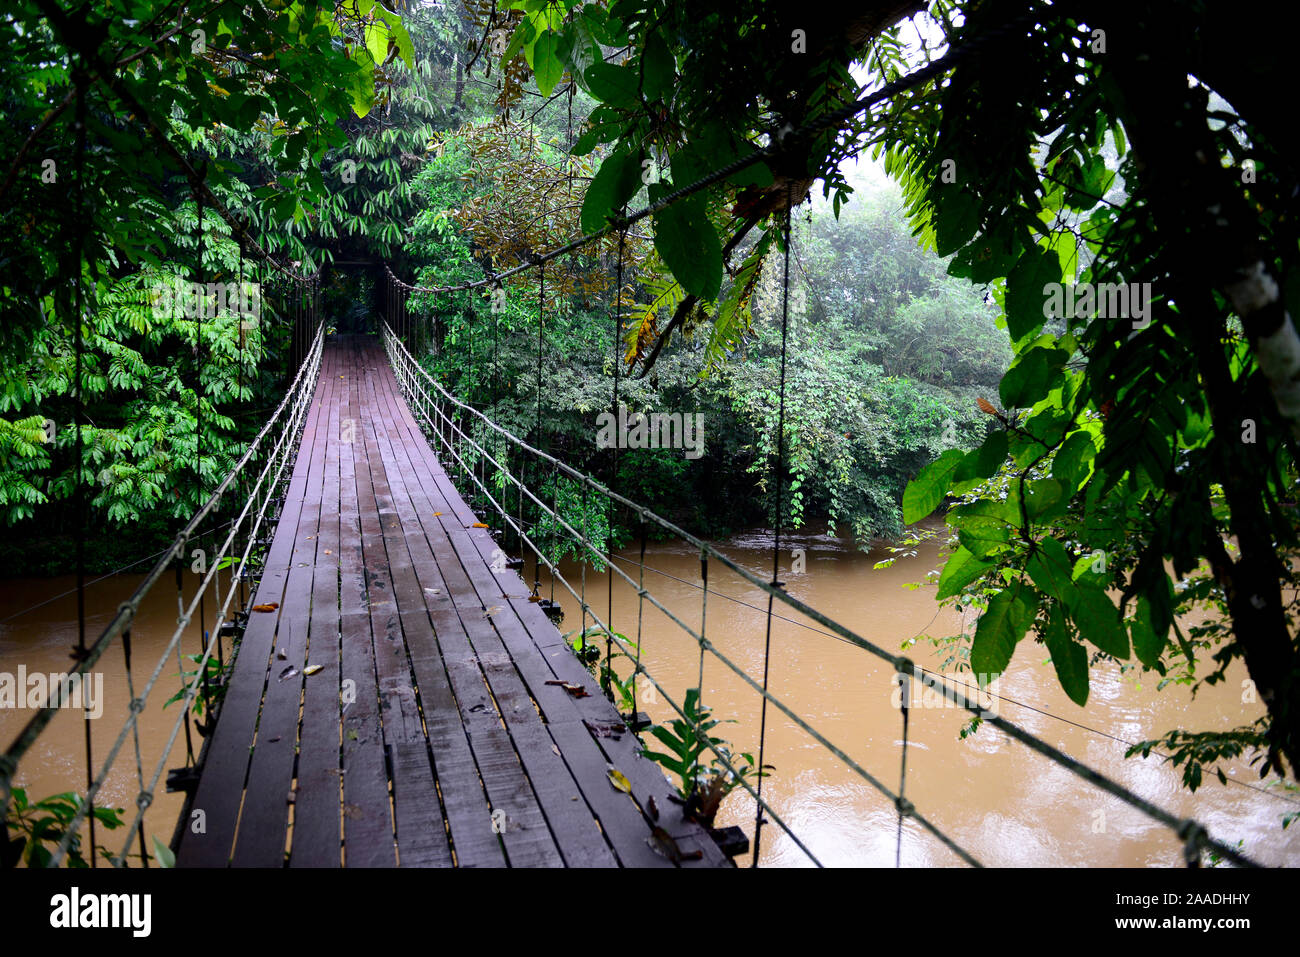 Pont suspendu sur la rivière, entrée au Parc national du Gunung Mulu Site du patrimoine naturel mondial de l'UNESCO, Bornéo Malaisien. Banque D'Images